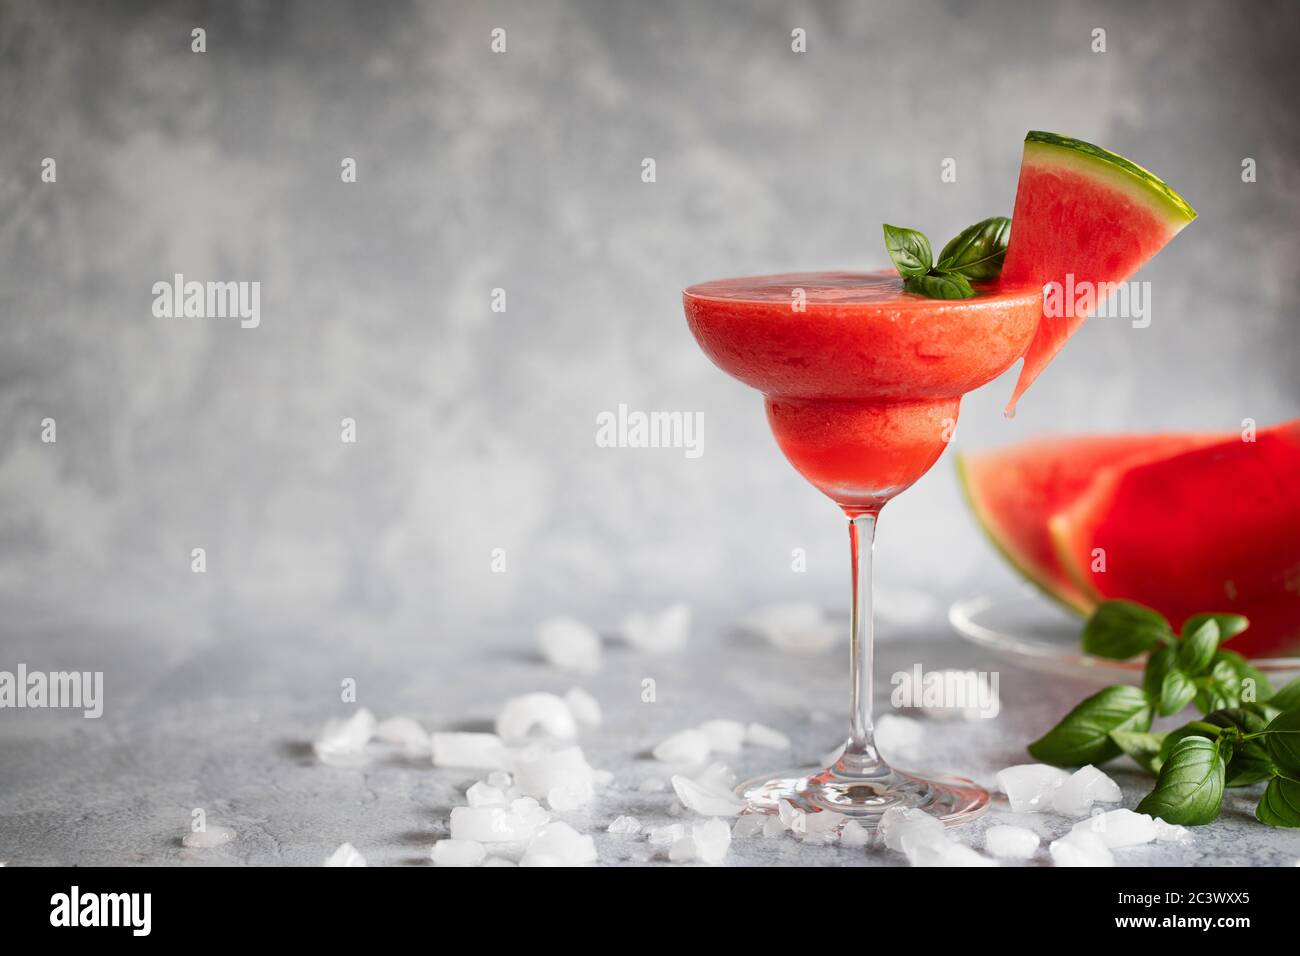 Une boisson fraîche et surgelée de margarita accompagnée de fraises et de pastèques. La boisson est garnie de feuilles de basilic et de pastèque. Sur la glace diffuse GRA Banque D'Images